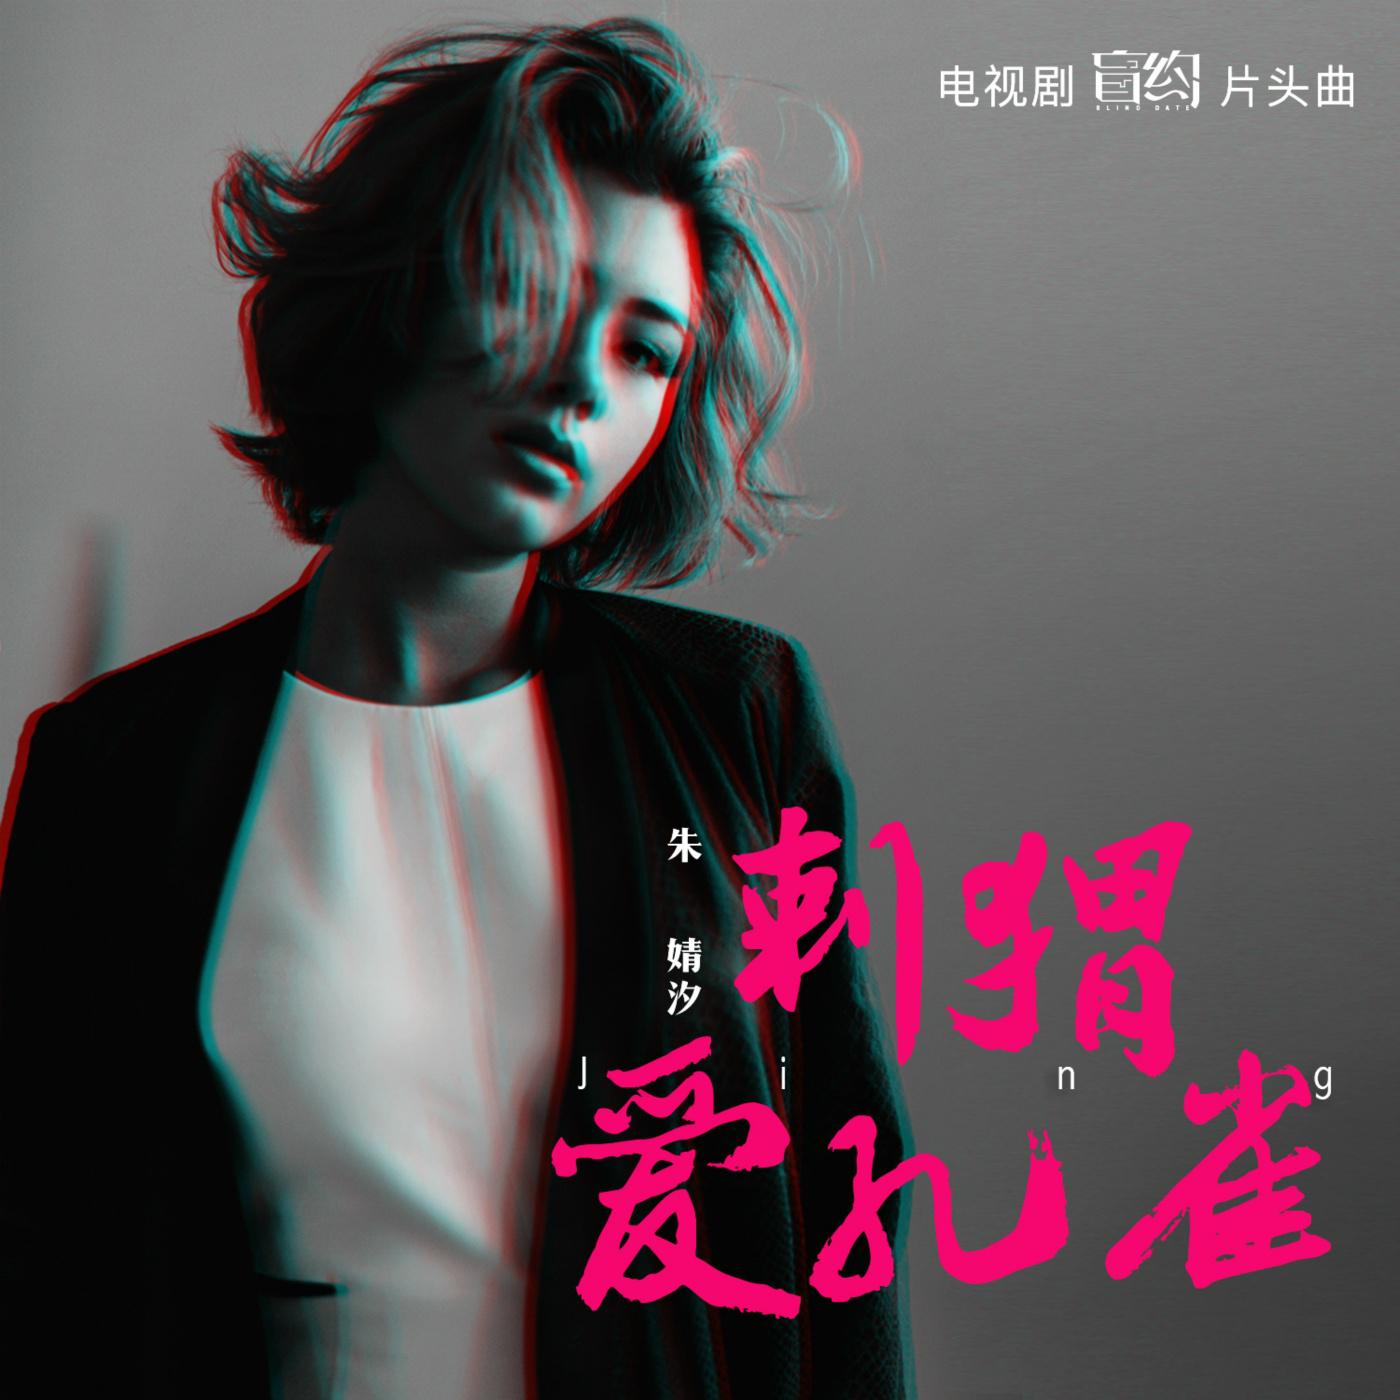 刺猬爱孔雀专辑